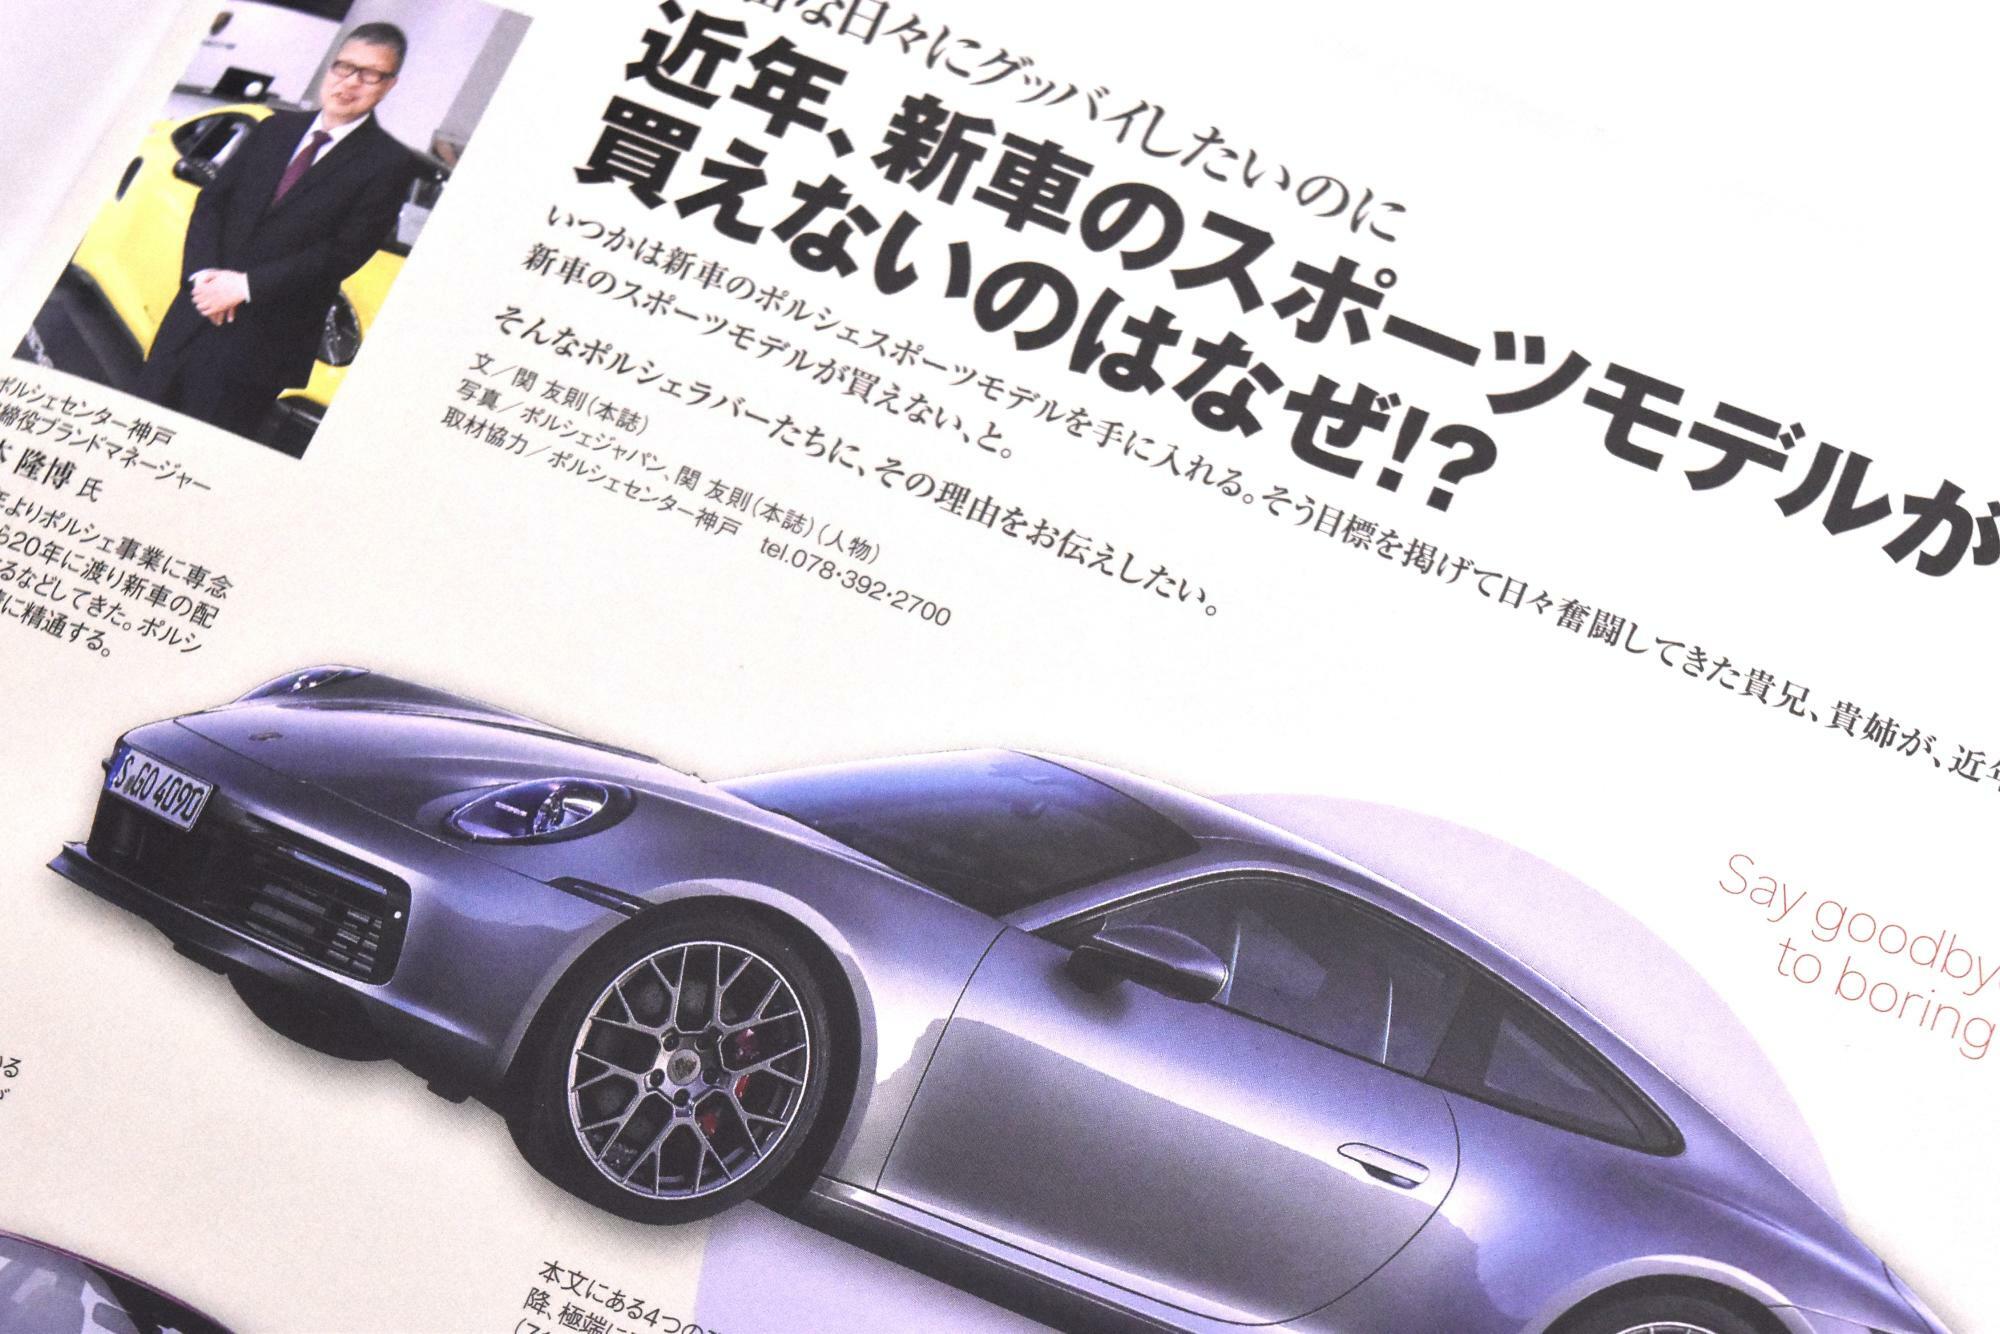 最新刊の96号でも、新車のスポーツモデルが手に入りにくいことについて言及している